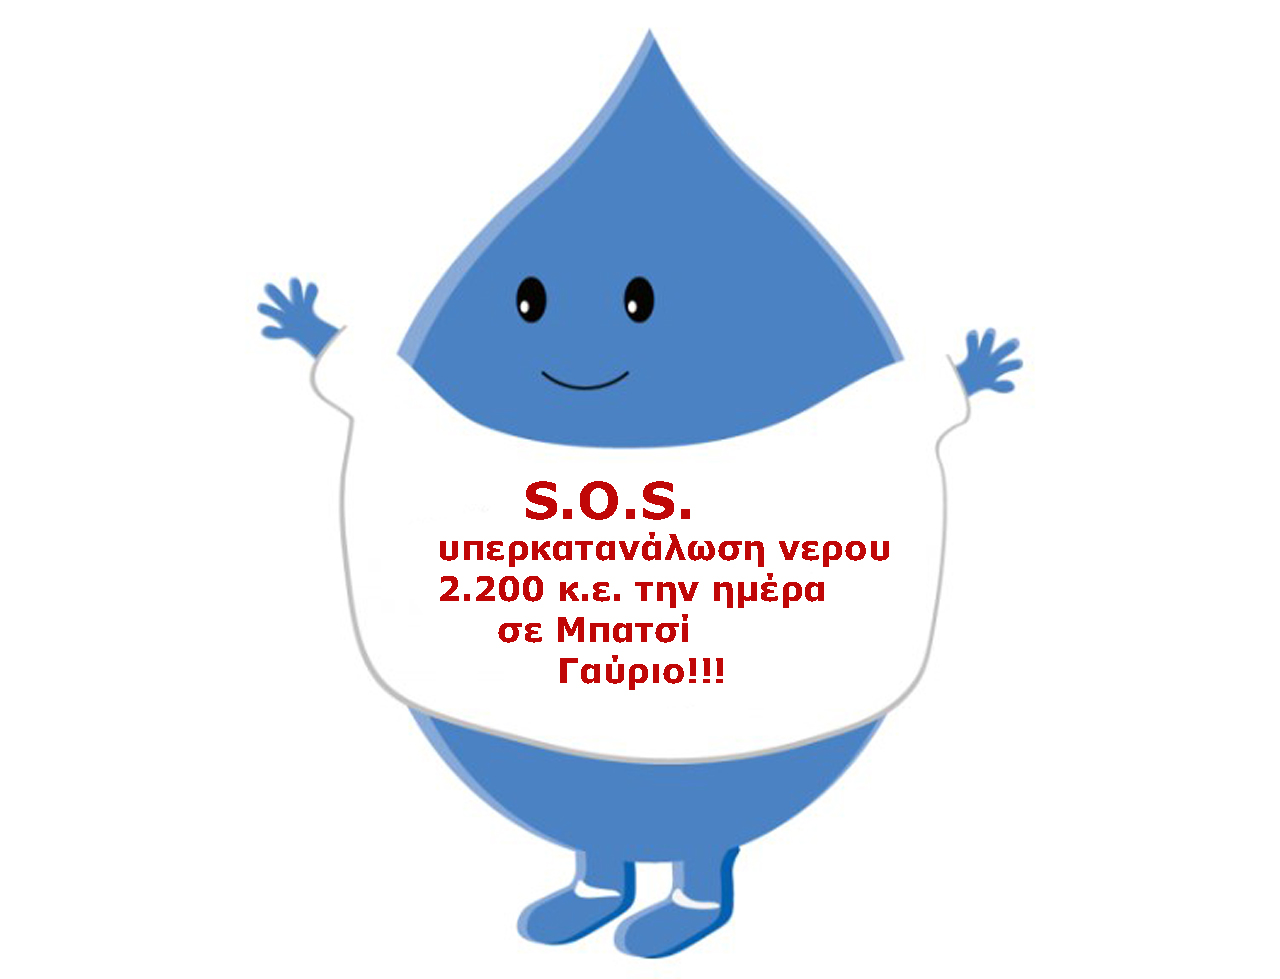 S.O.S. Υπερκατανάλωση νερού. Στα όρια το σύστημα υδροδότησης